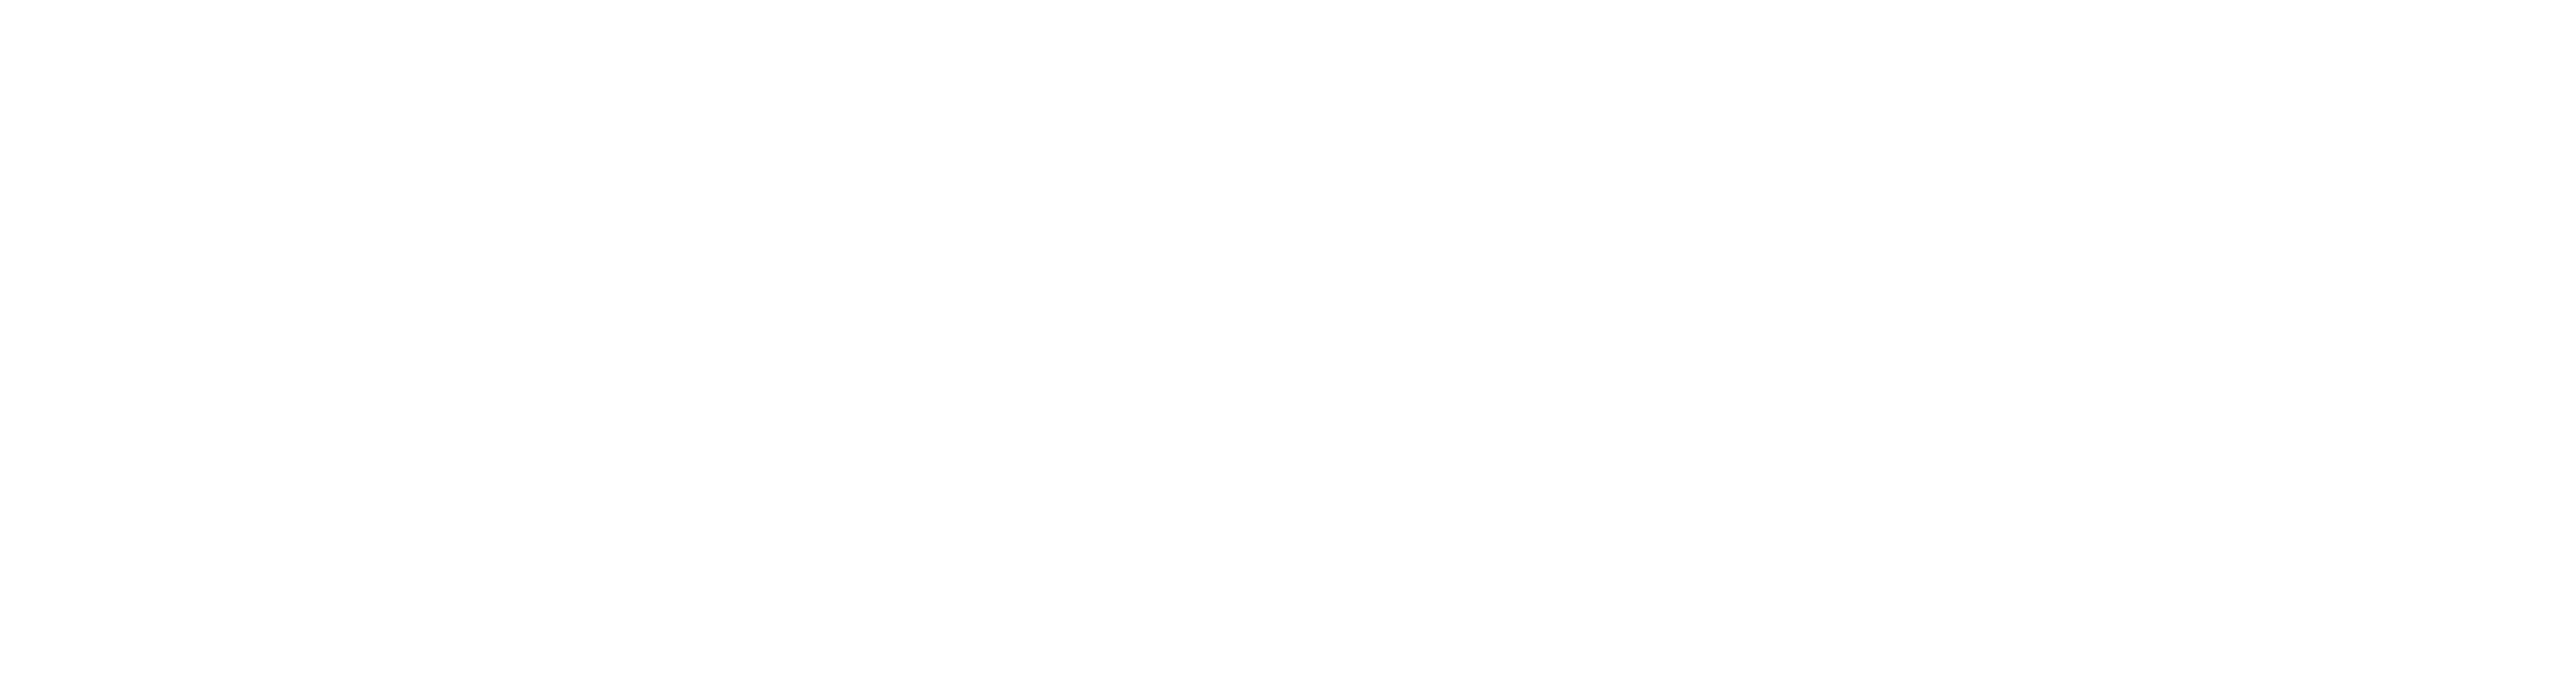 Hawketing